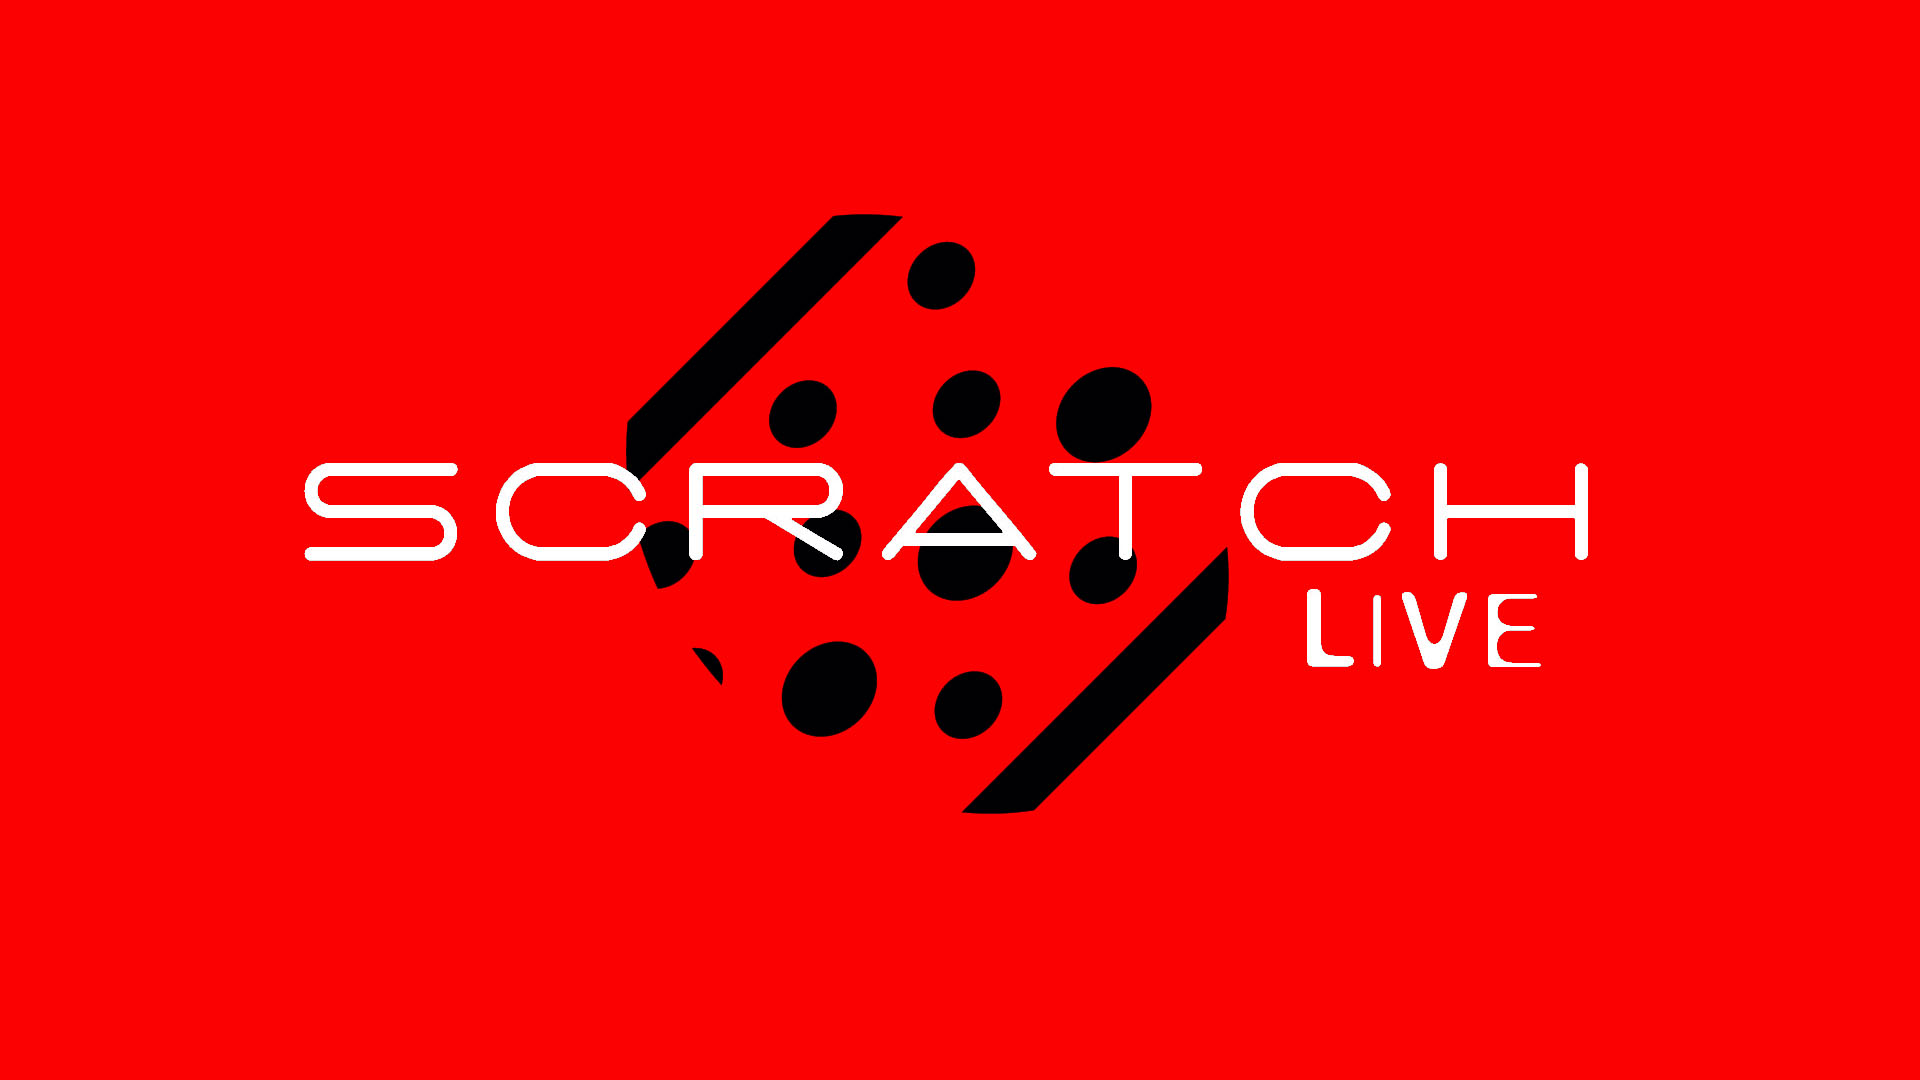 Serato Scratch Live Wallpaper Amp Desktop Pics